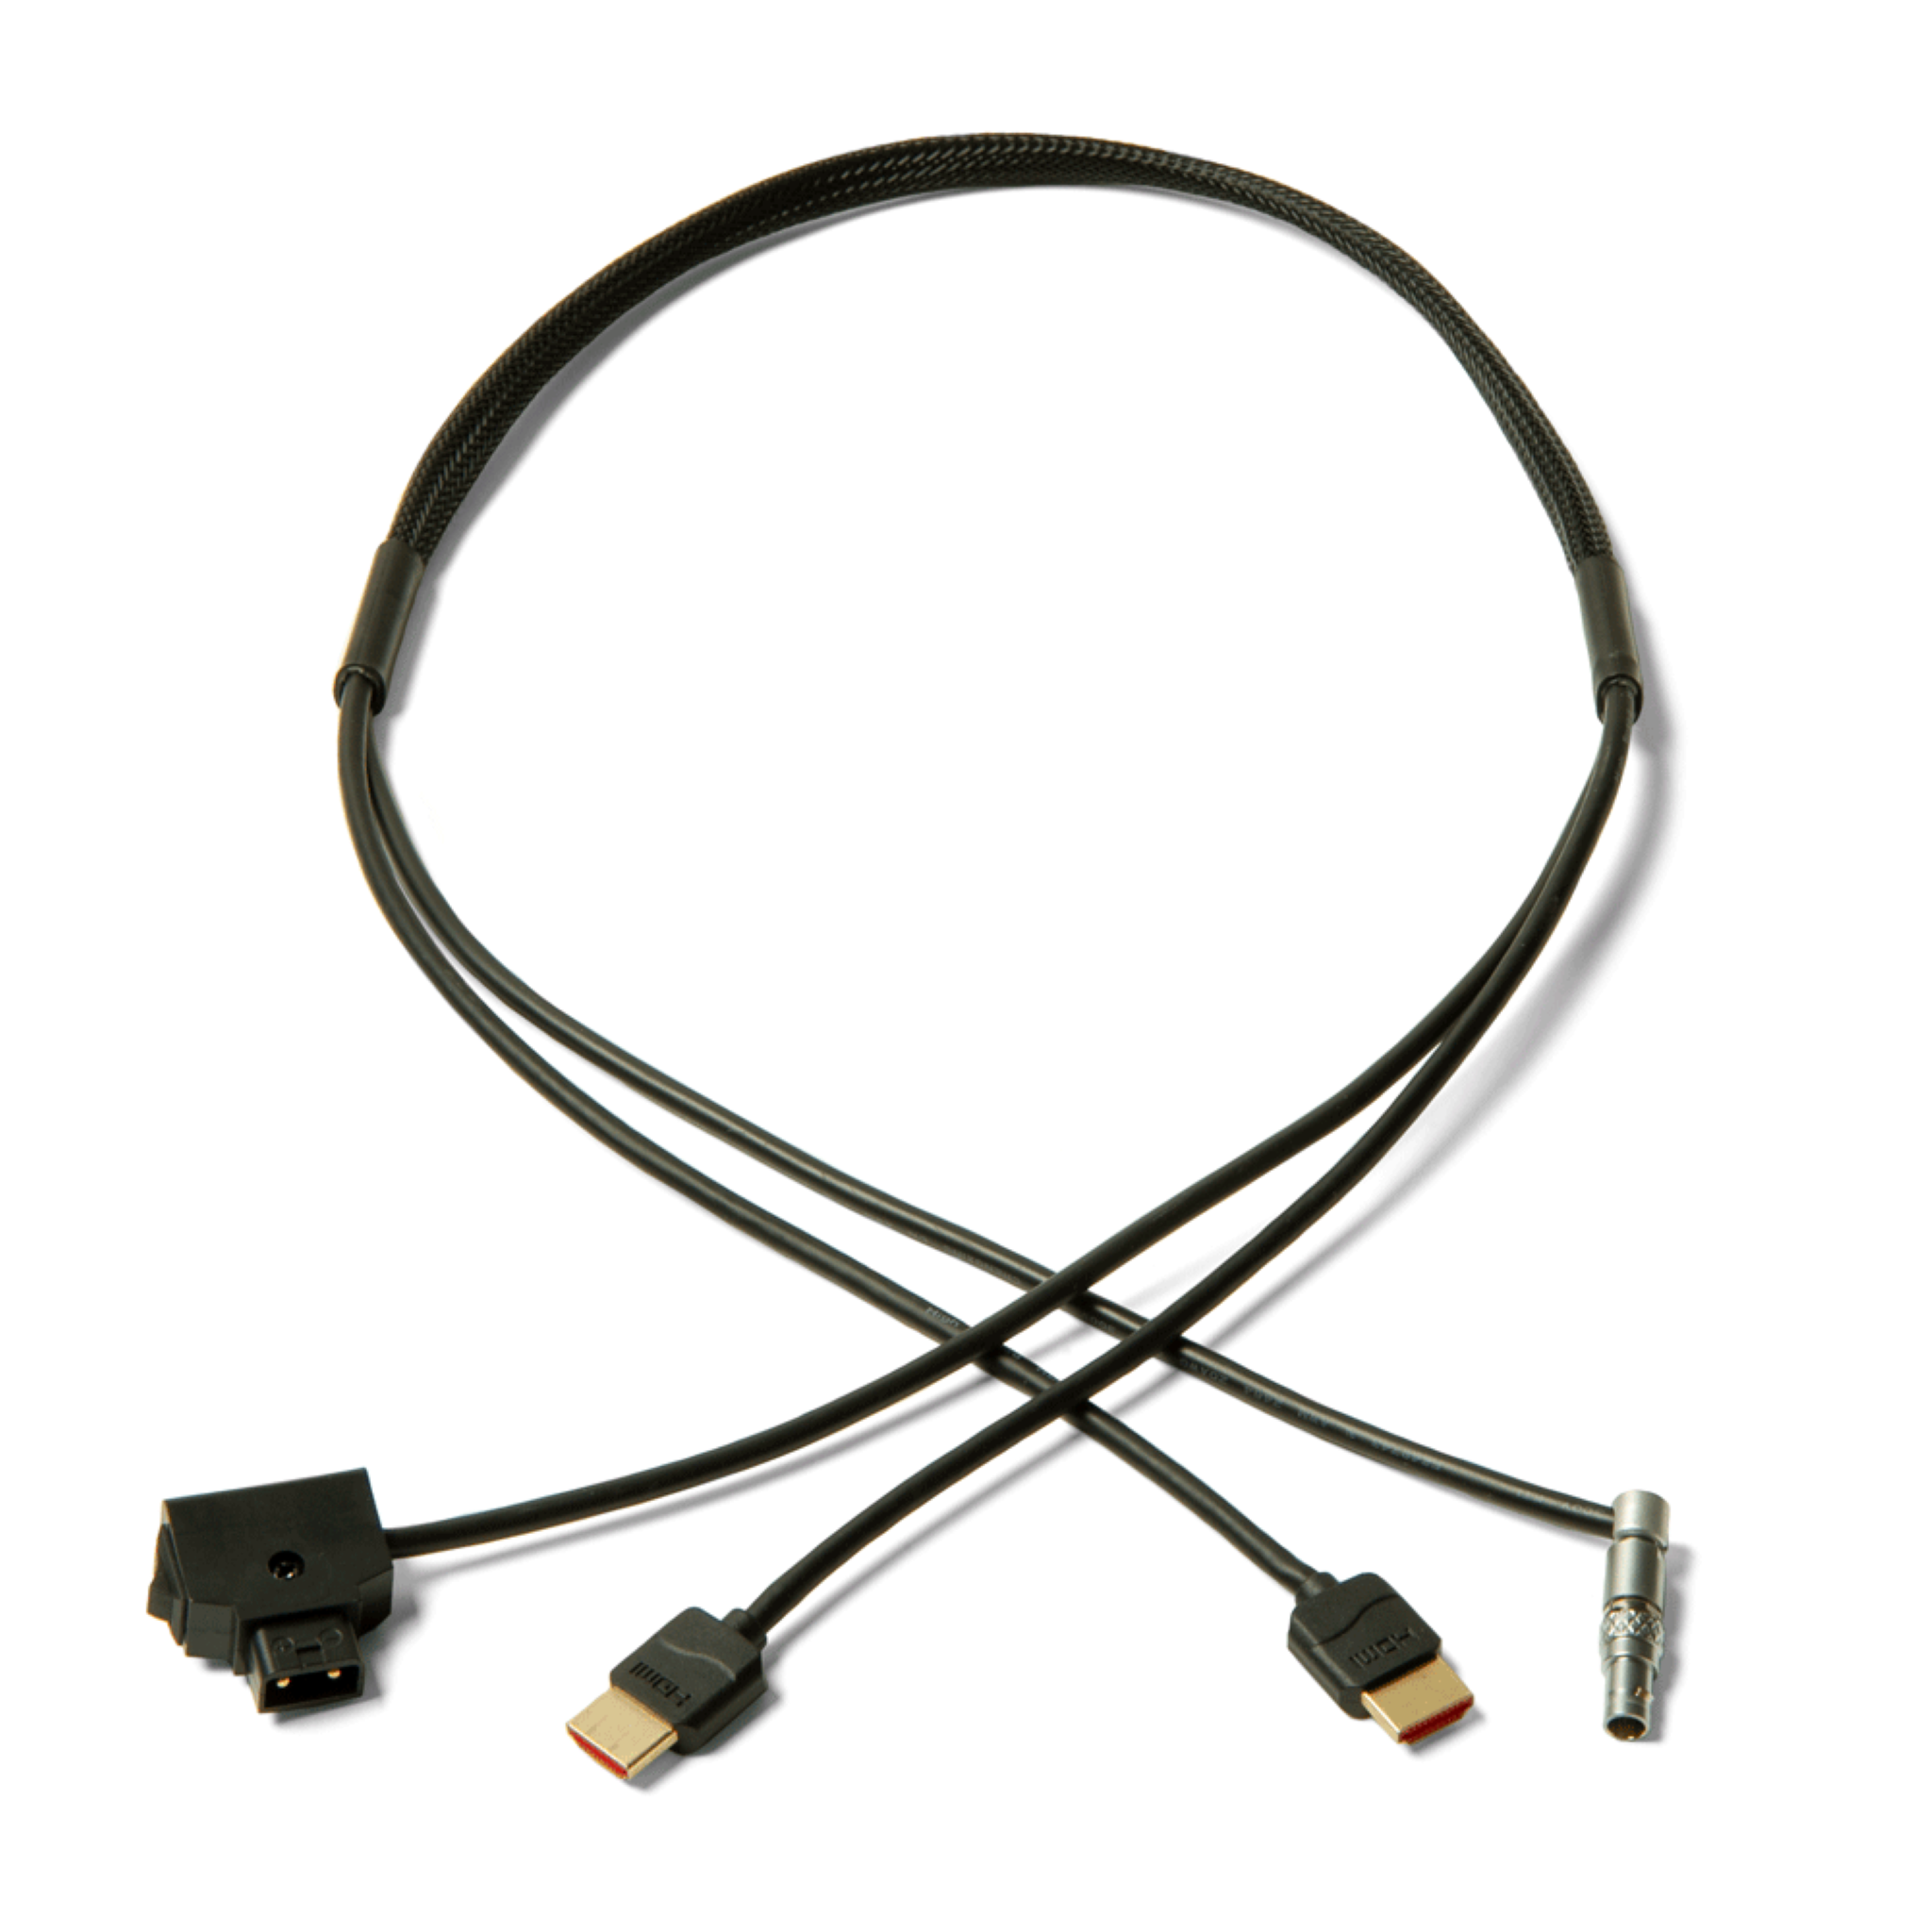 Cable de alimentación y vídeo HDMI compatible con Lemo de 4 pines con interruptor de alimentación